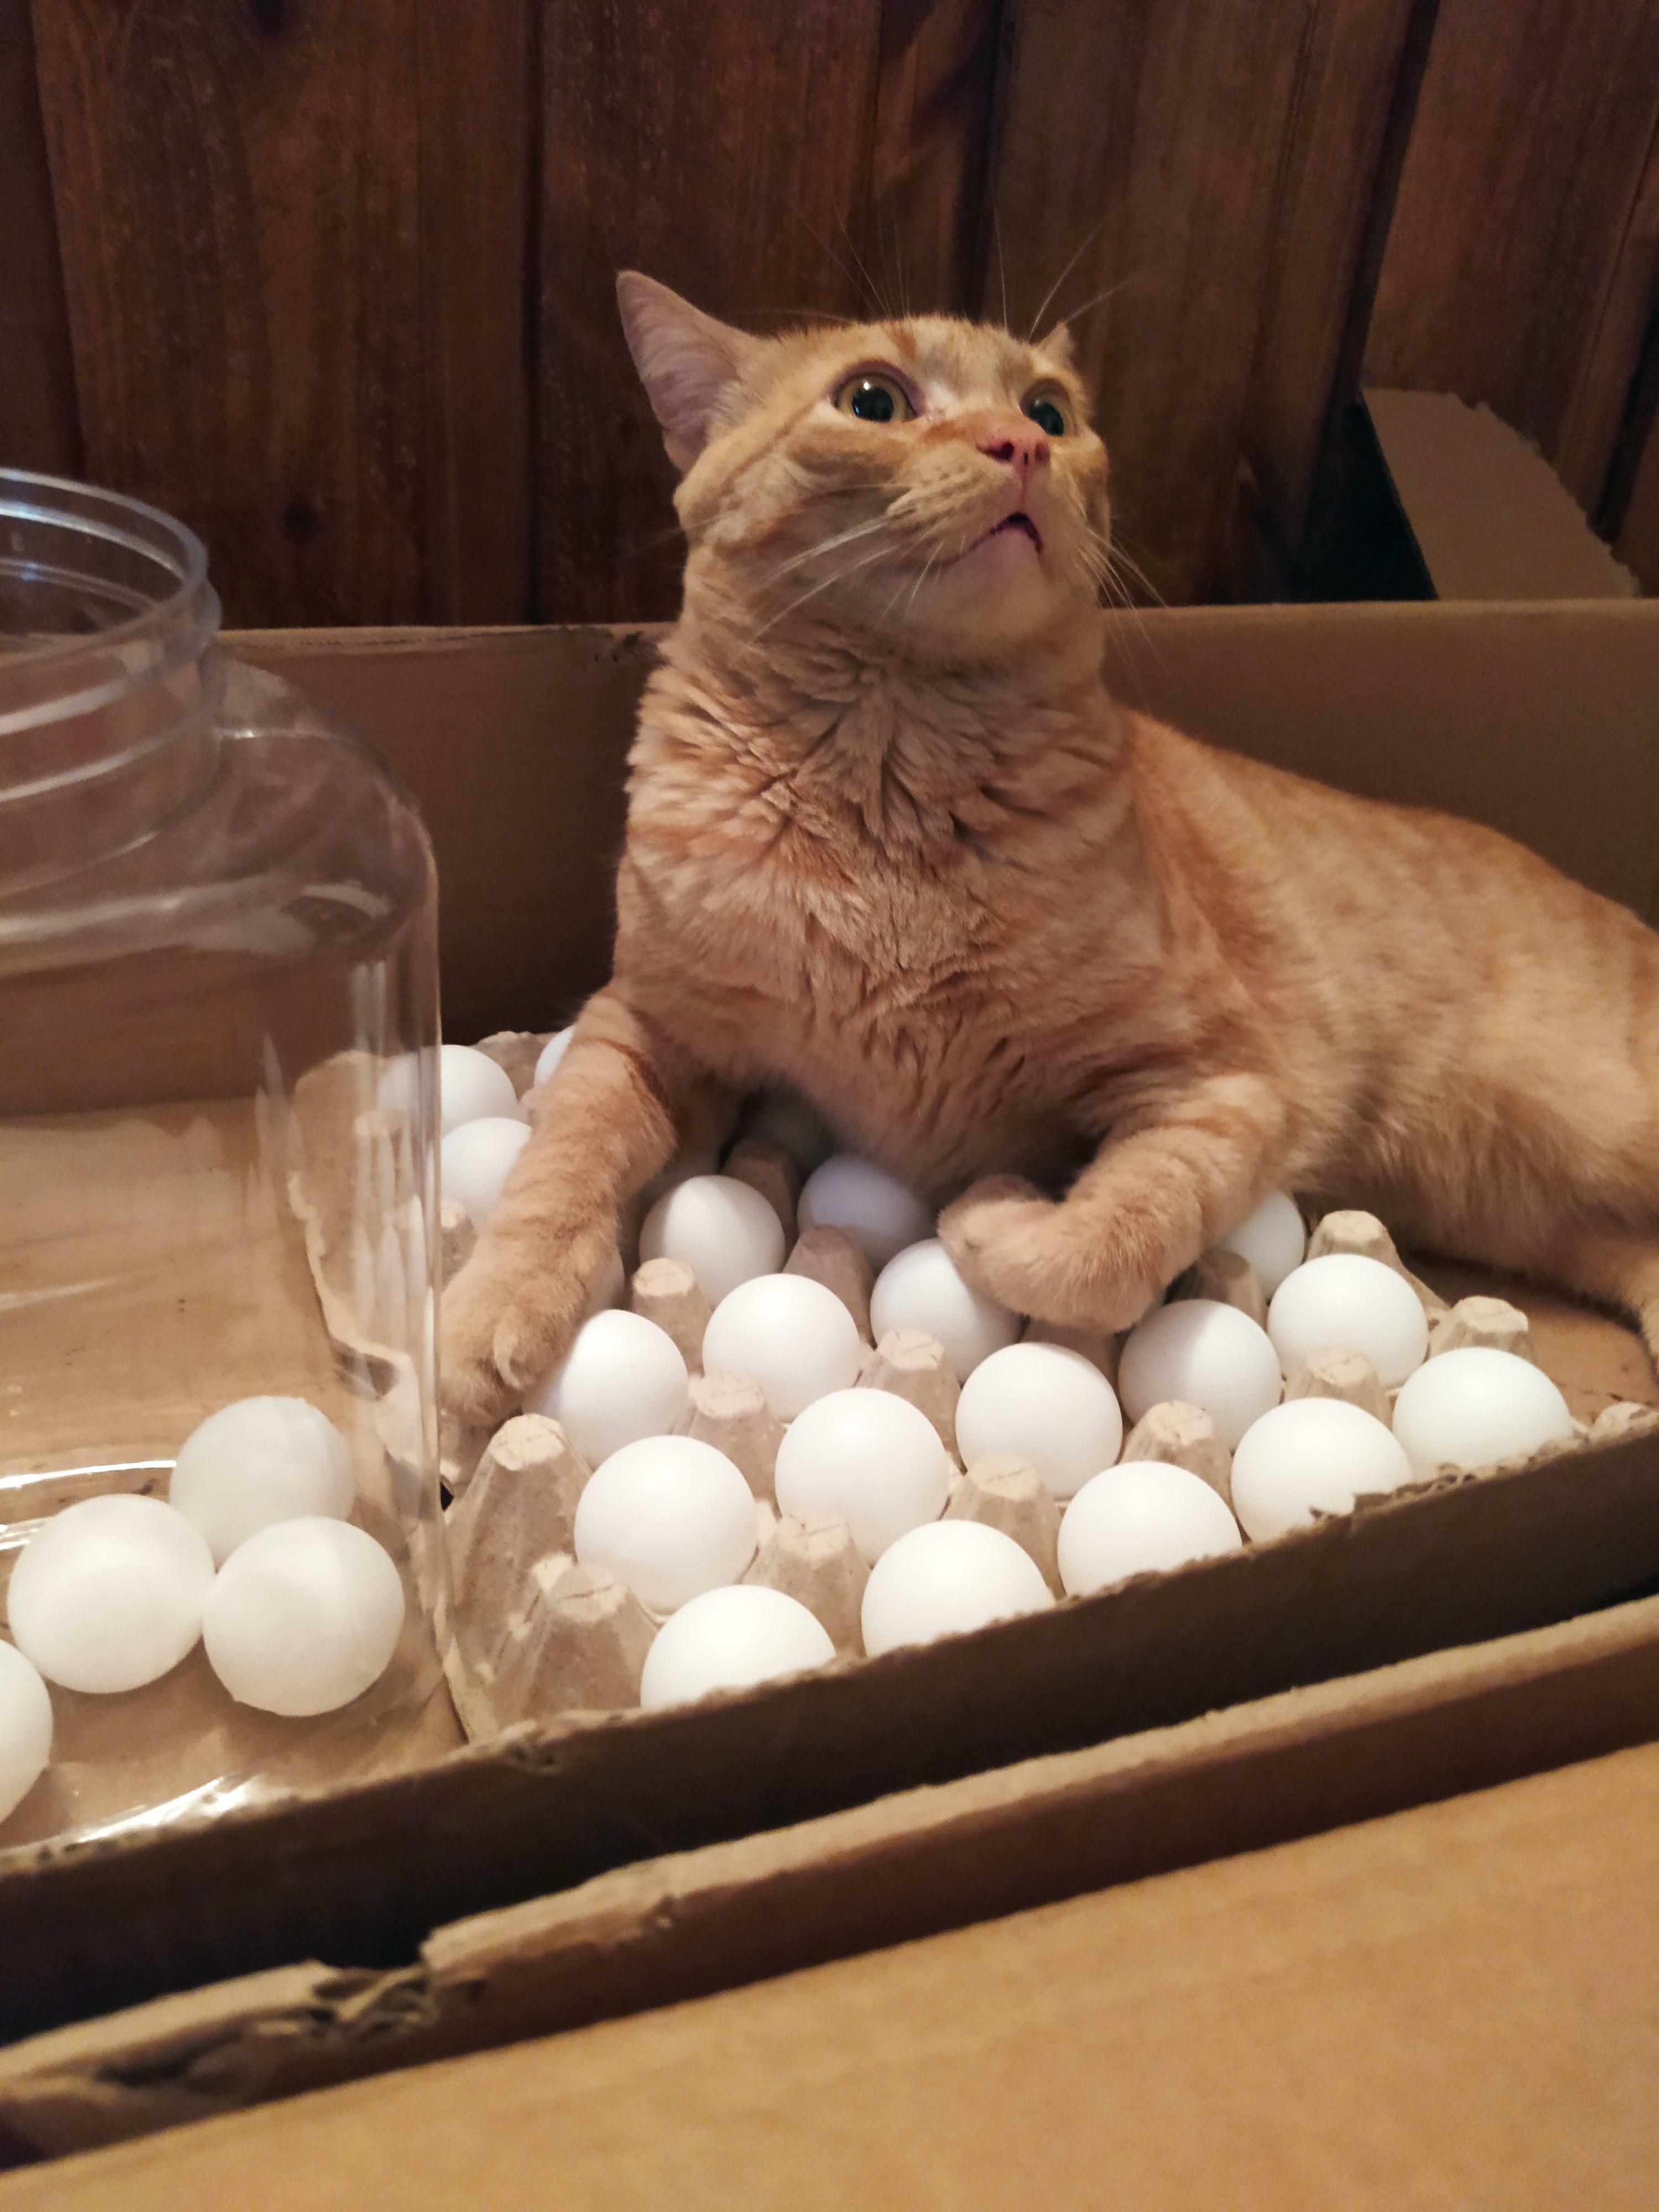 il essaie toujours de se coucher sur les œufs, alors nous mettons des balles de ping-pong dans la boîte à œufs